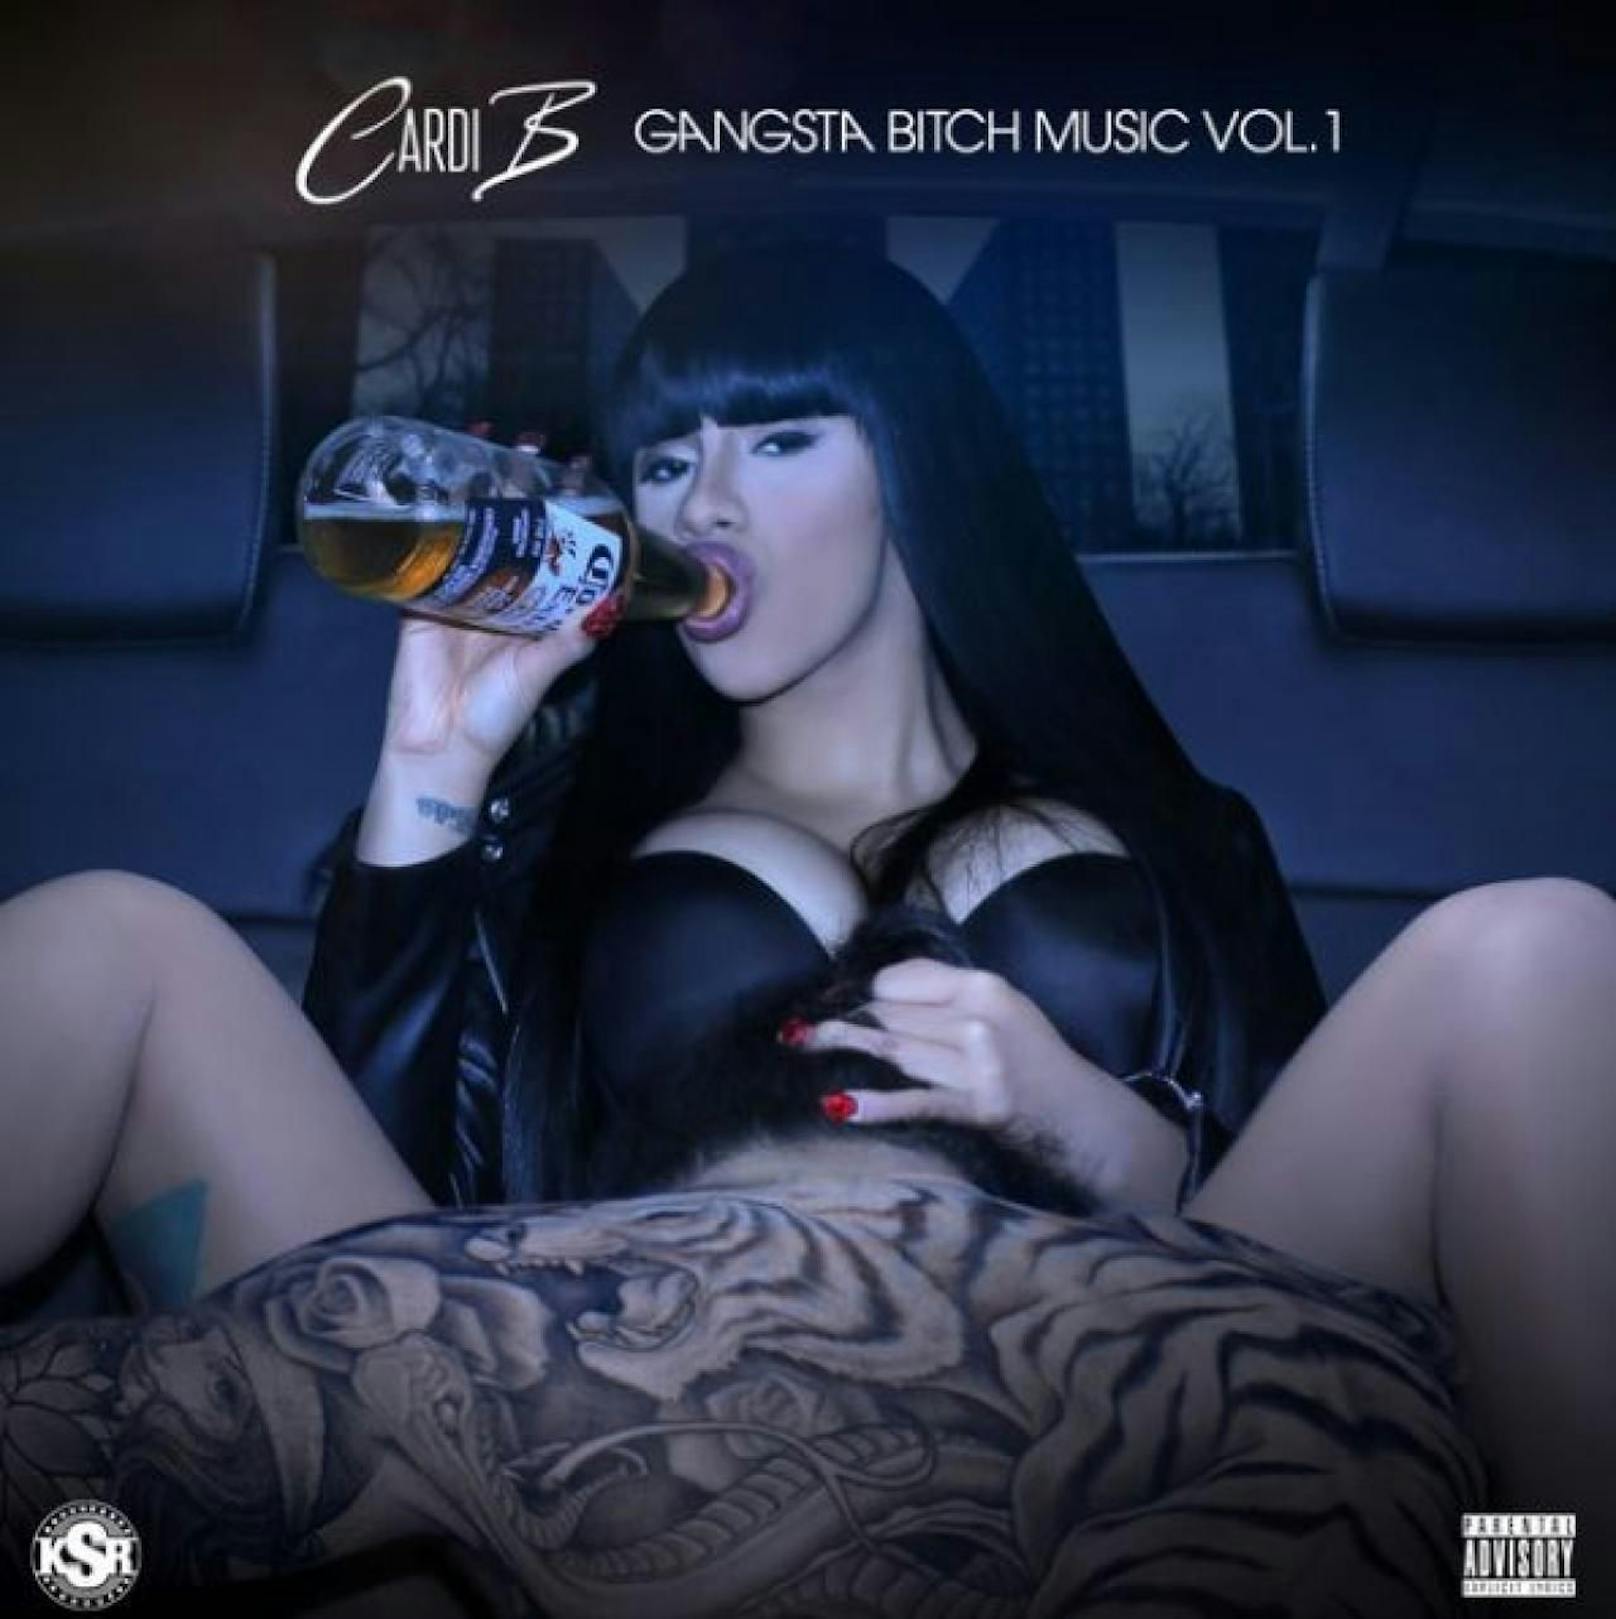 Cardi B: Gangsta Bitch Music Vol 1